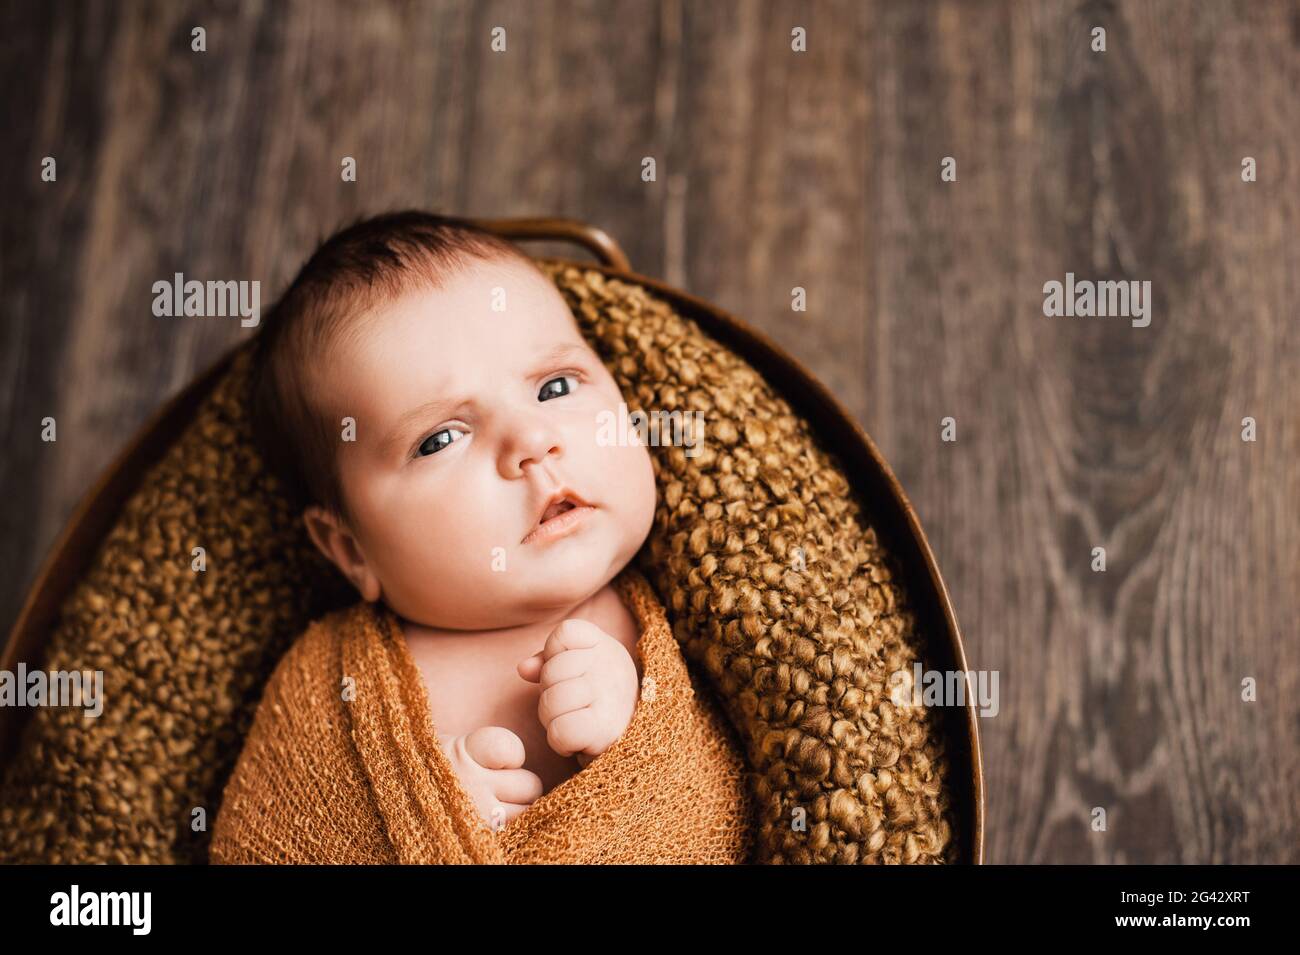 Bambina appena nata avvolta in una coperta marrone a maglia che guarda nella macchina fotografica Foto Stock